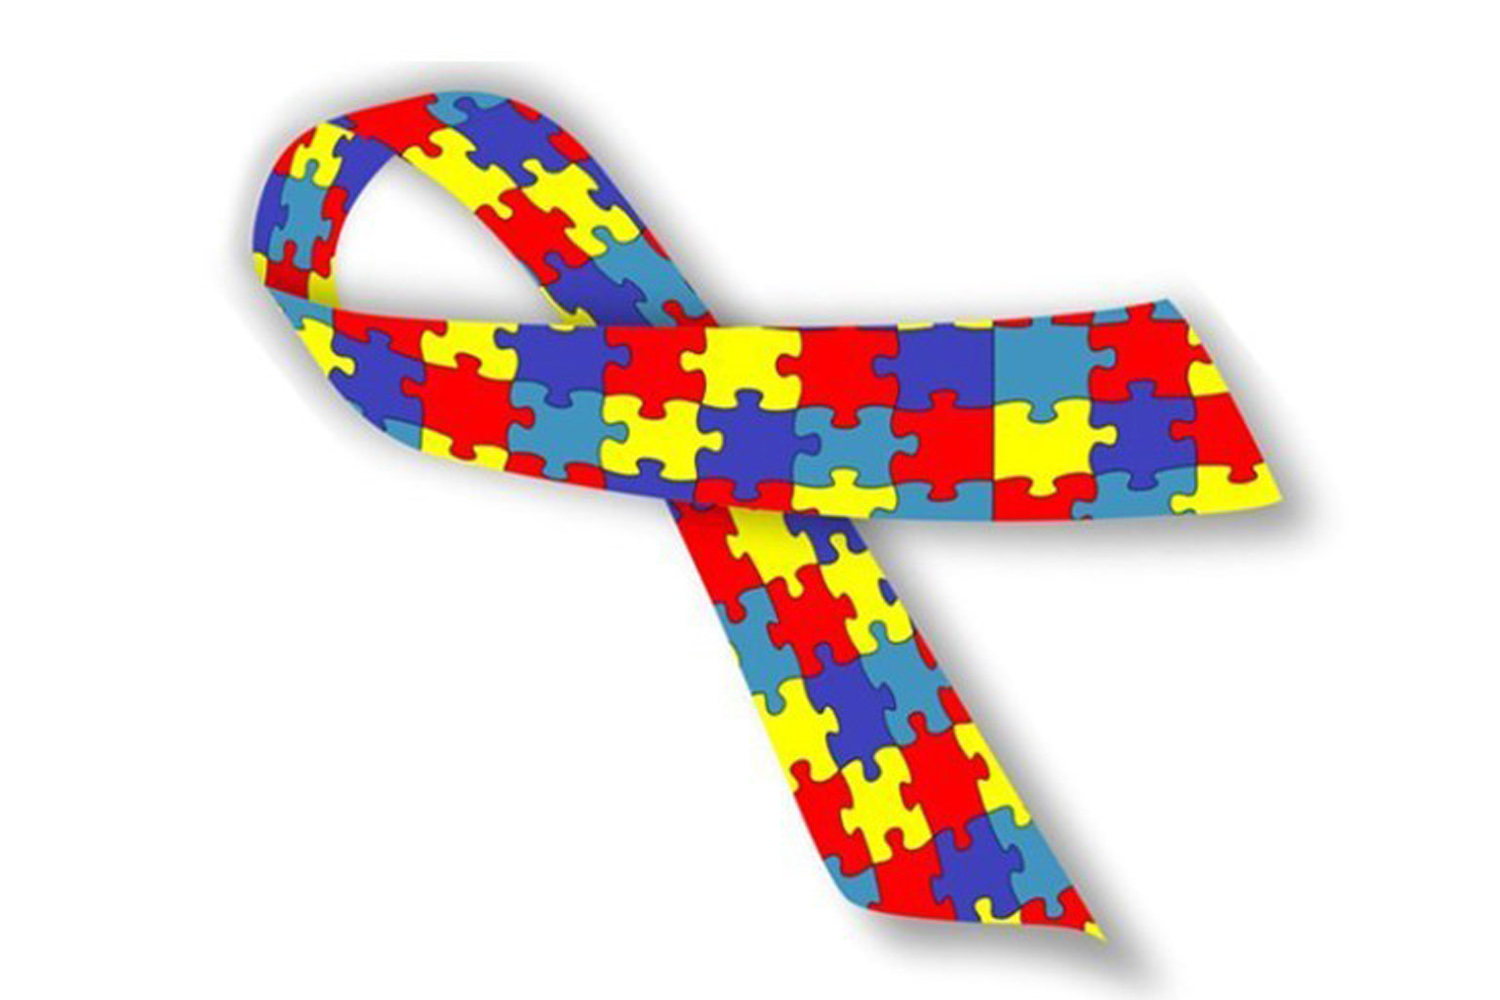 #PraCegoVer: Ilustração mostra o laço que é síbolo do autismo. Ele é todo colorido e formado por peças de quebra-cabeça.